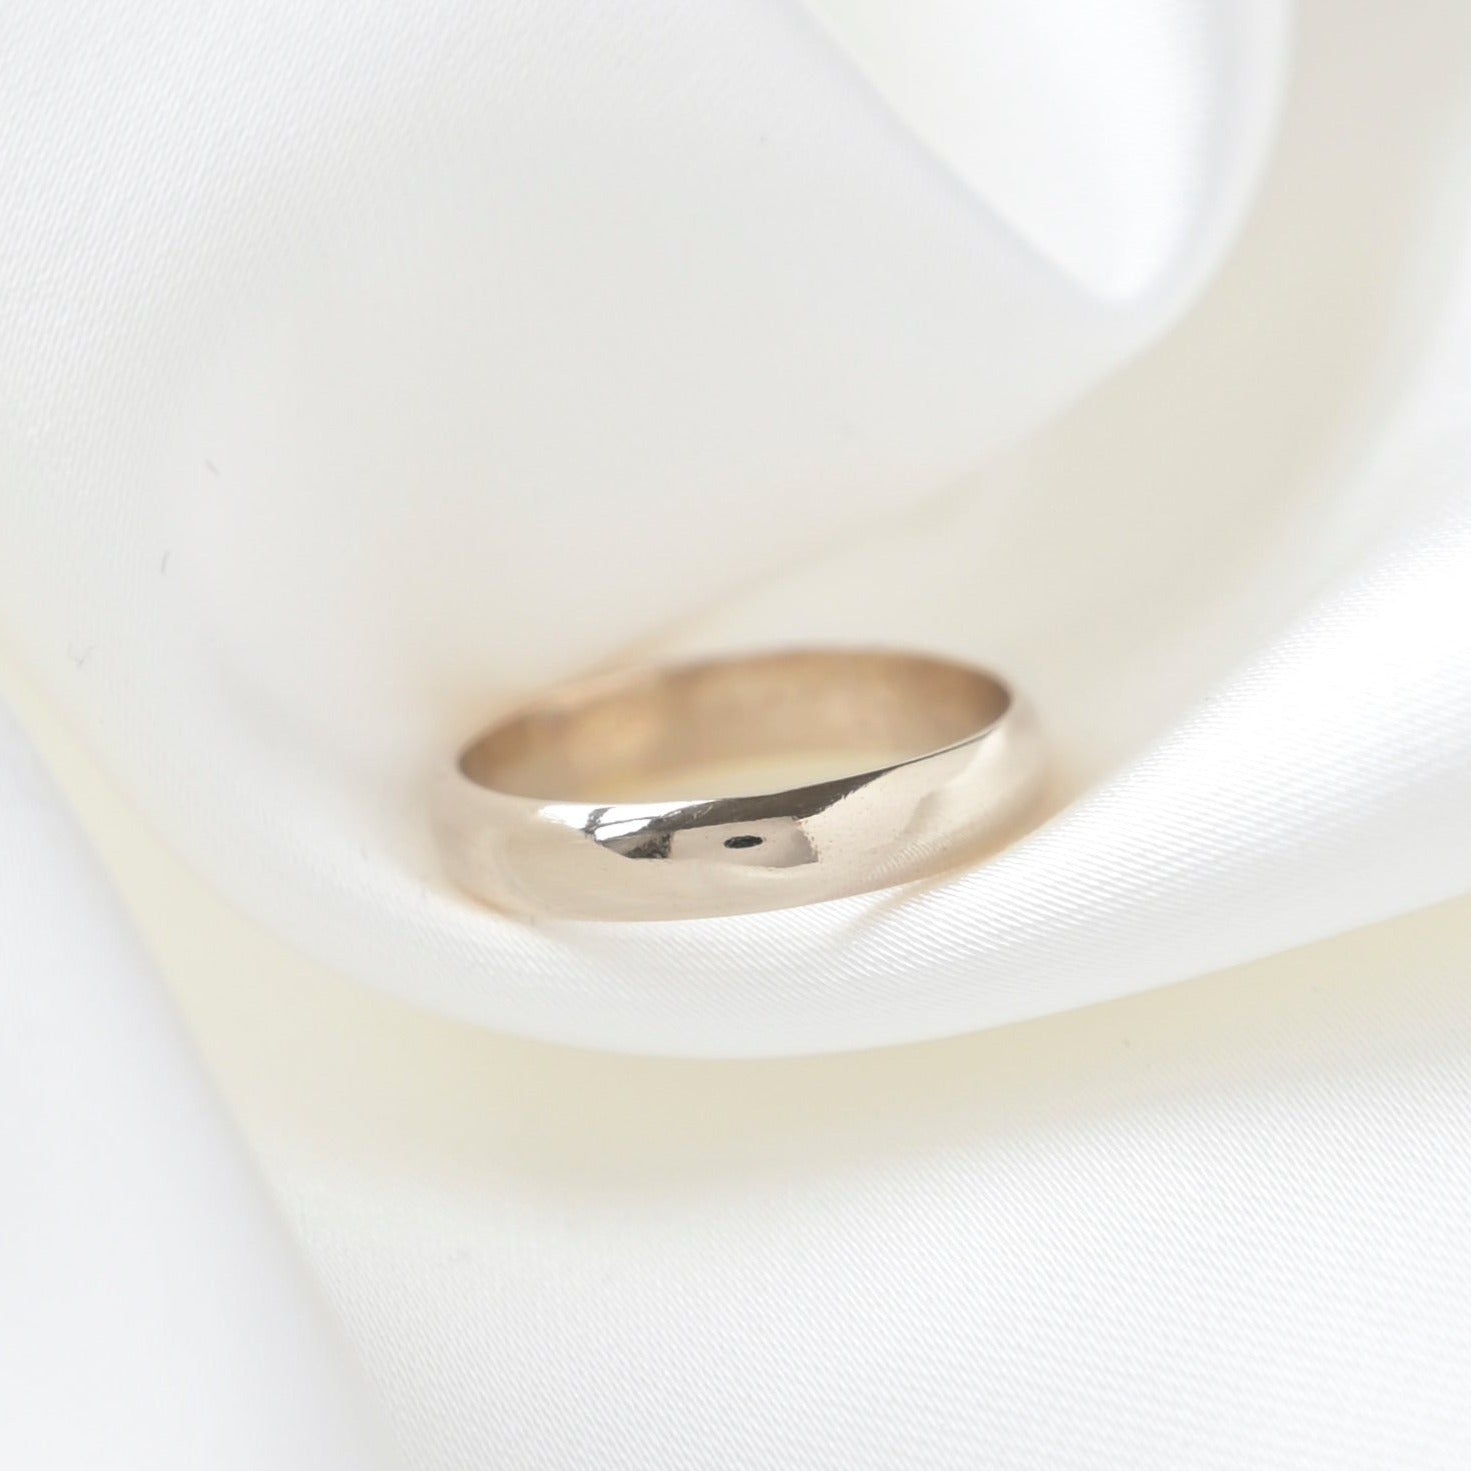 9ct White Gold Medium Wedding Ring